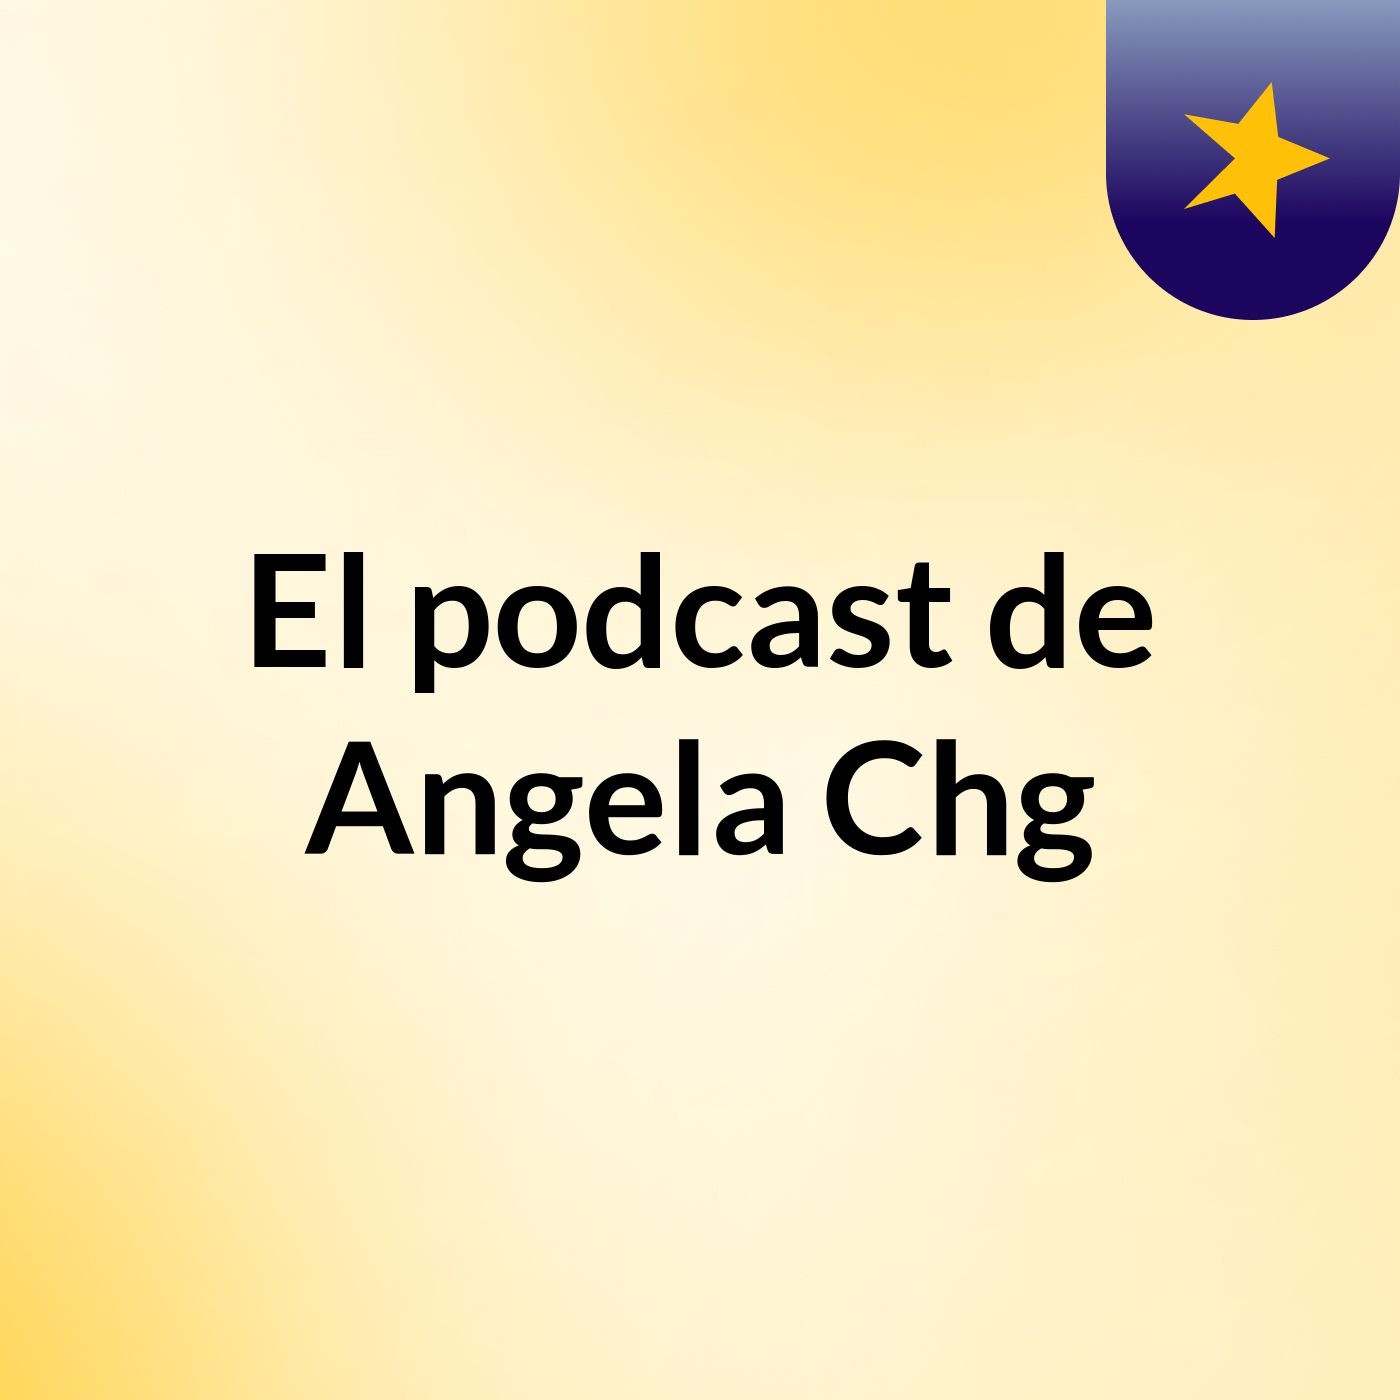 El podcast de Angela Chg